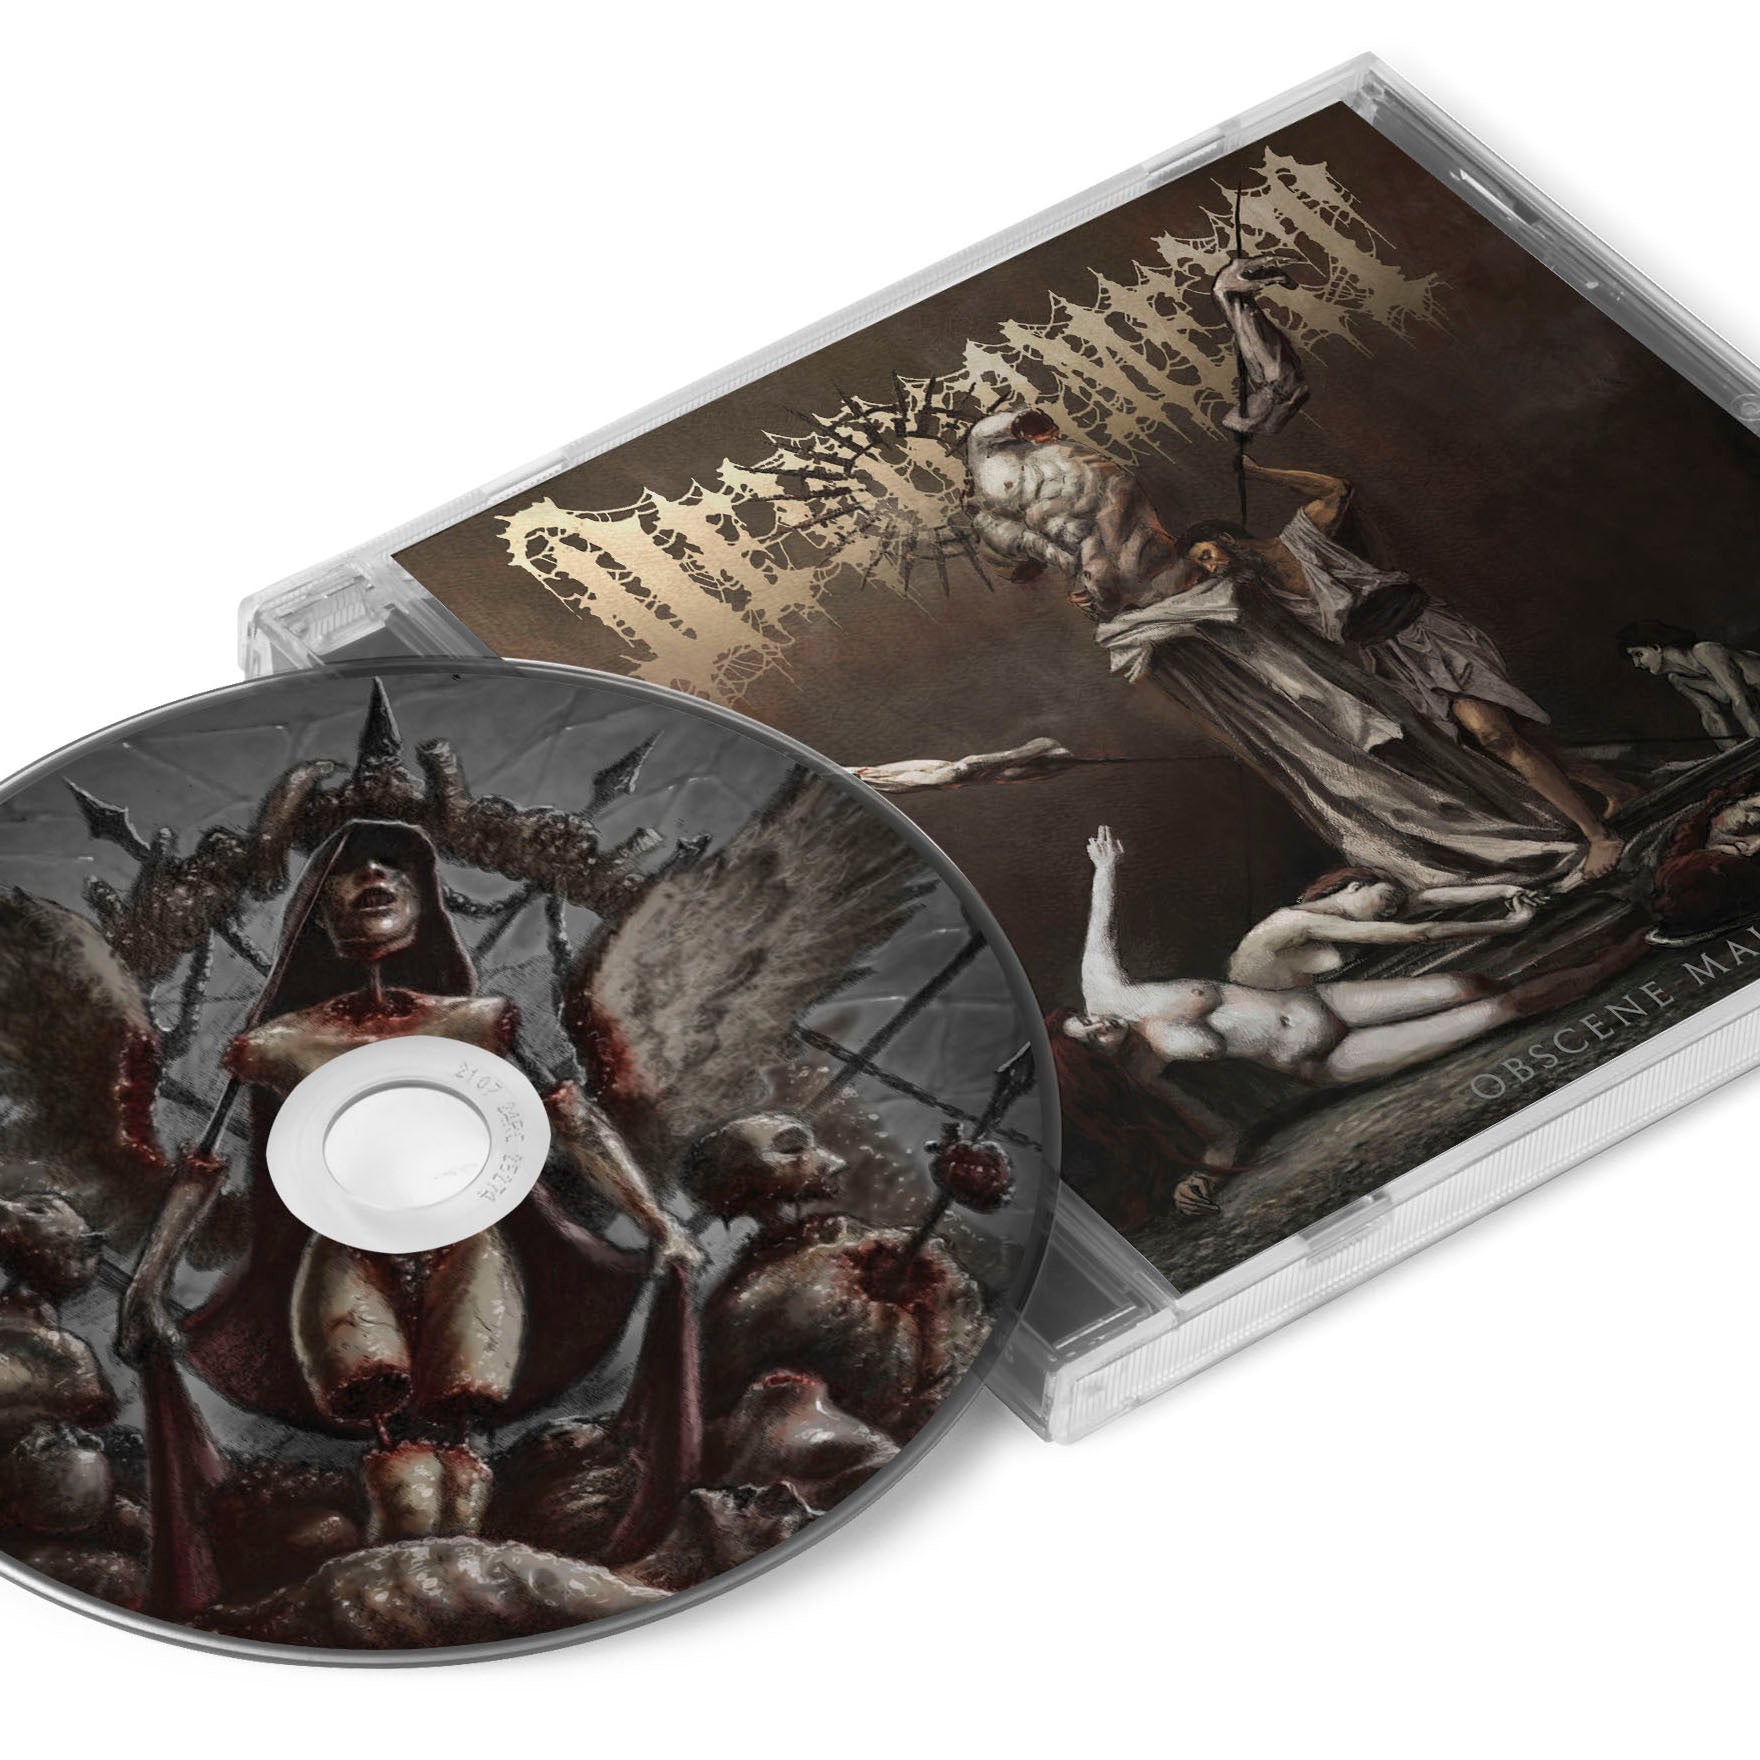 Devourment "Obscene Majesty" CD